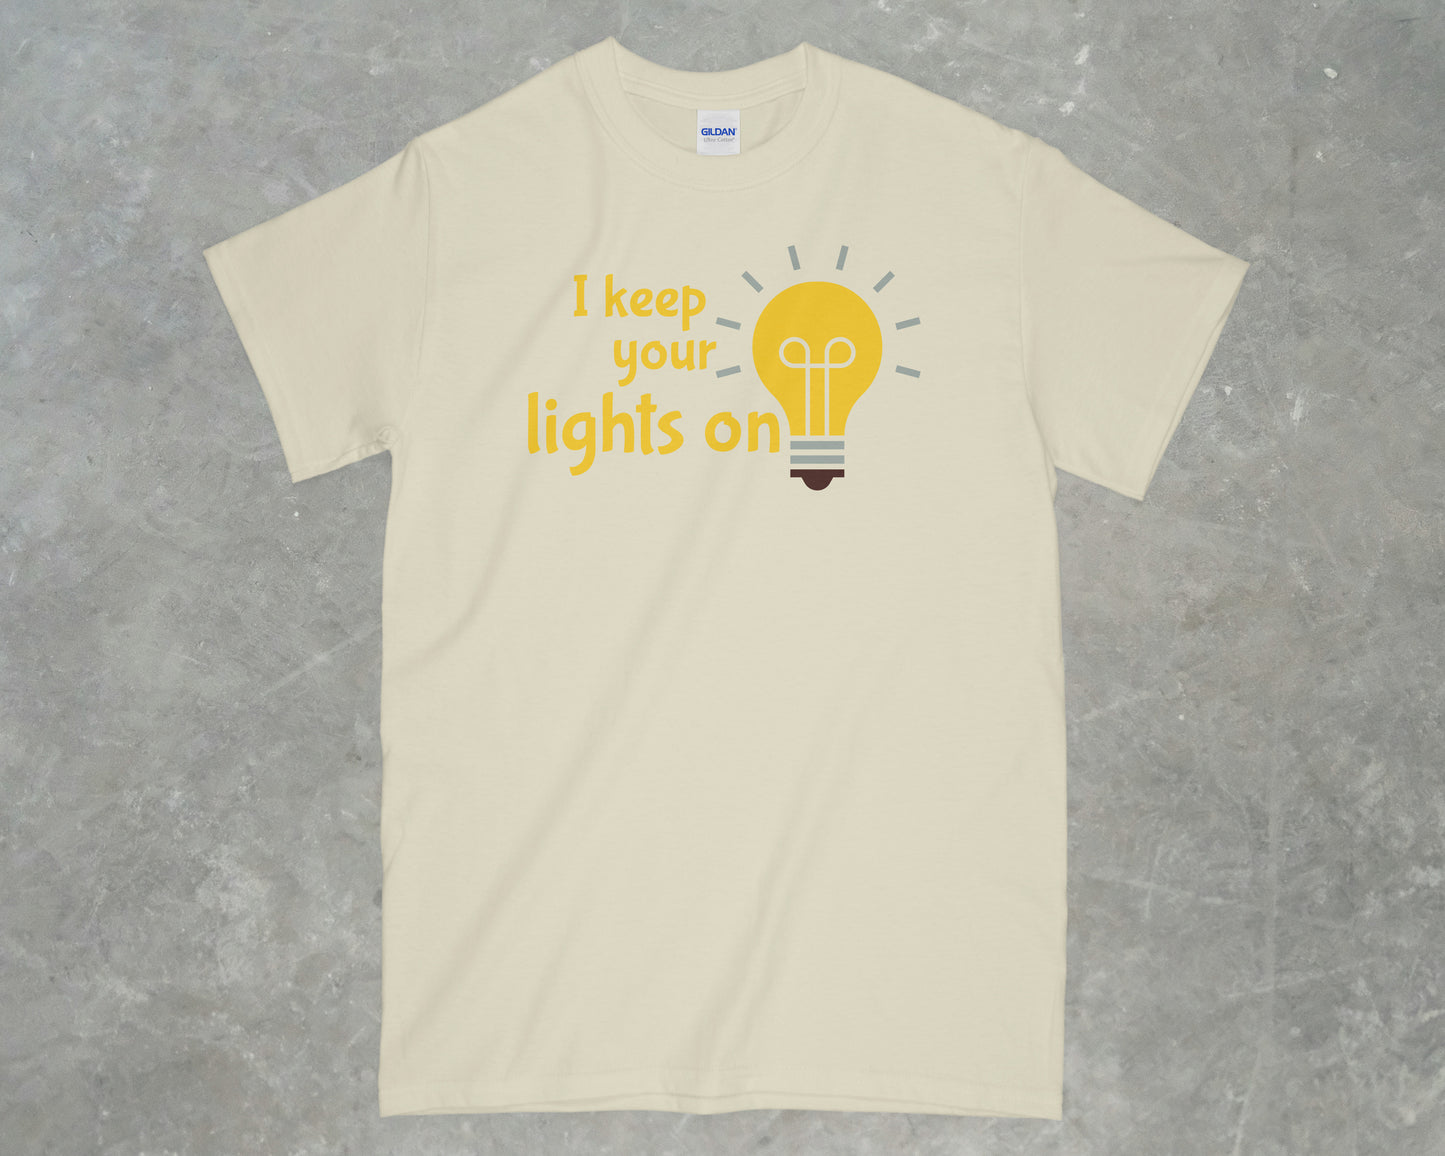 I keep your lights on shirt